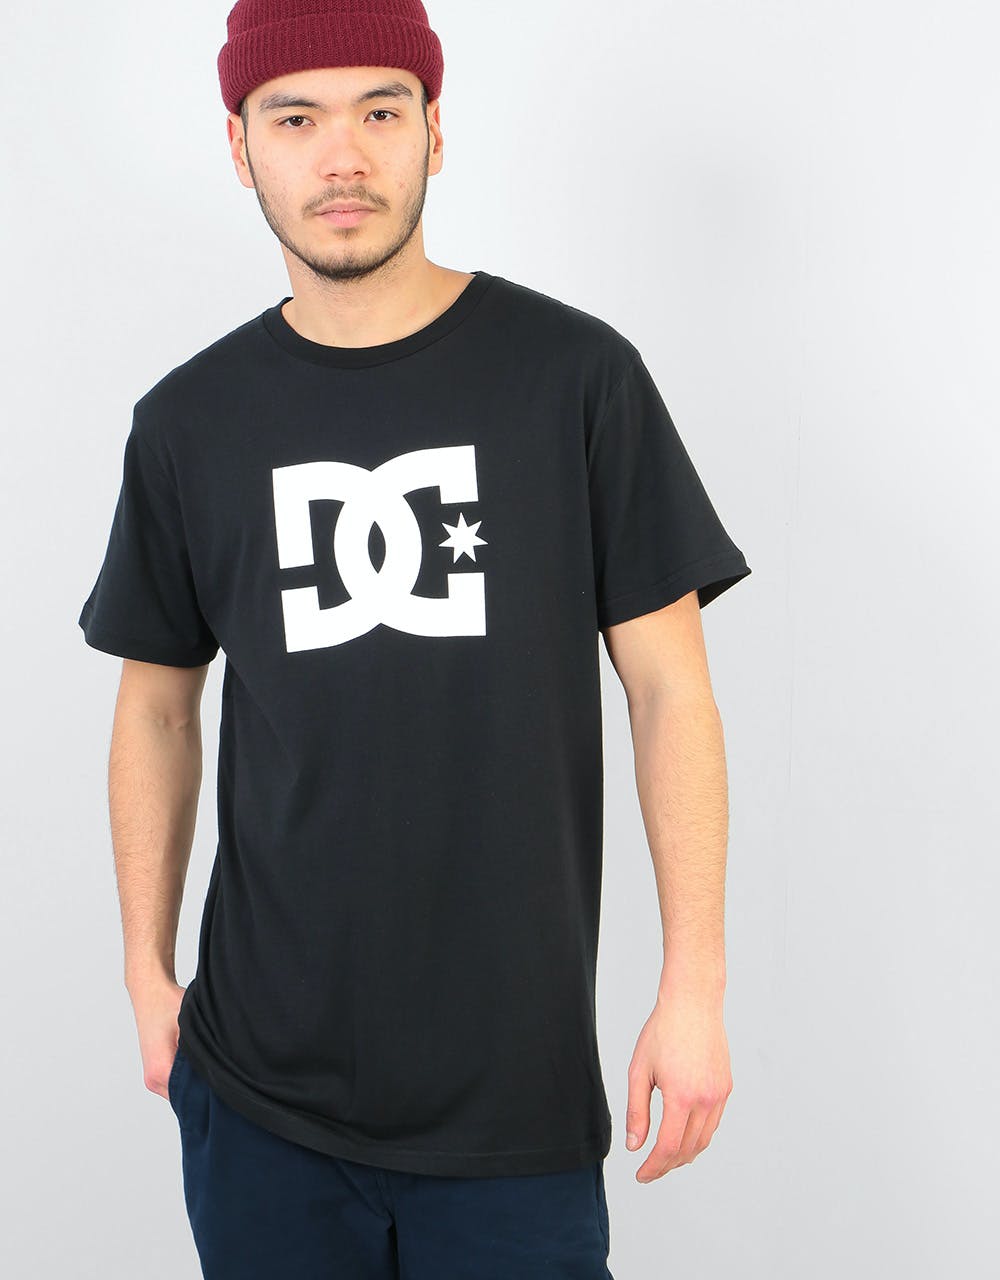 DC Star T-Shirt - Black